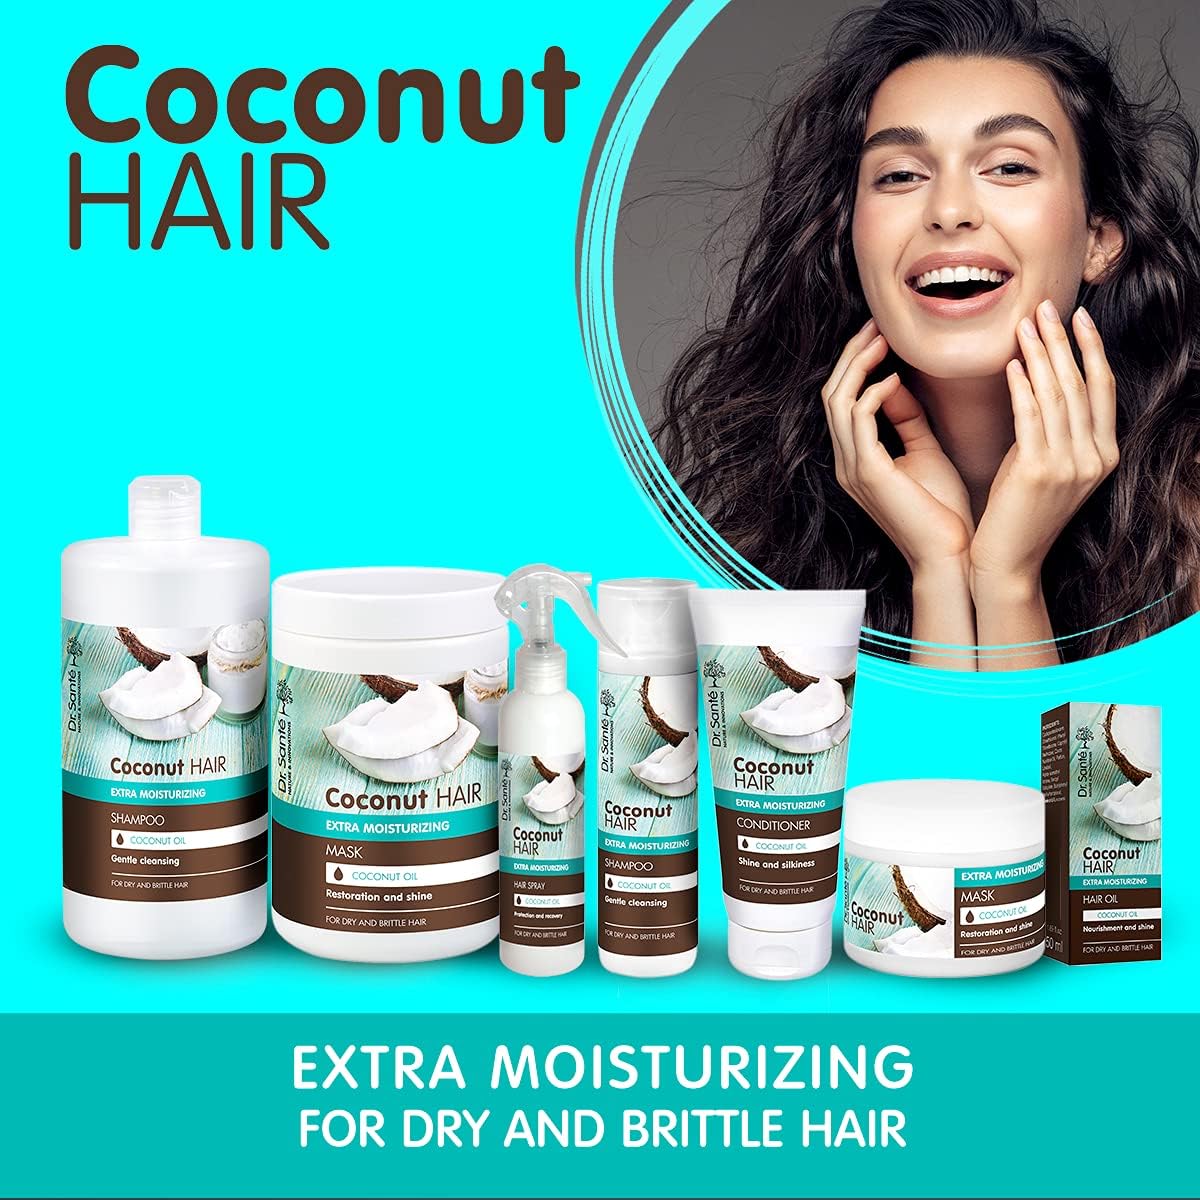 Dr.Sante Coconut Hair Oil 50ml